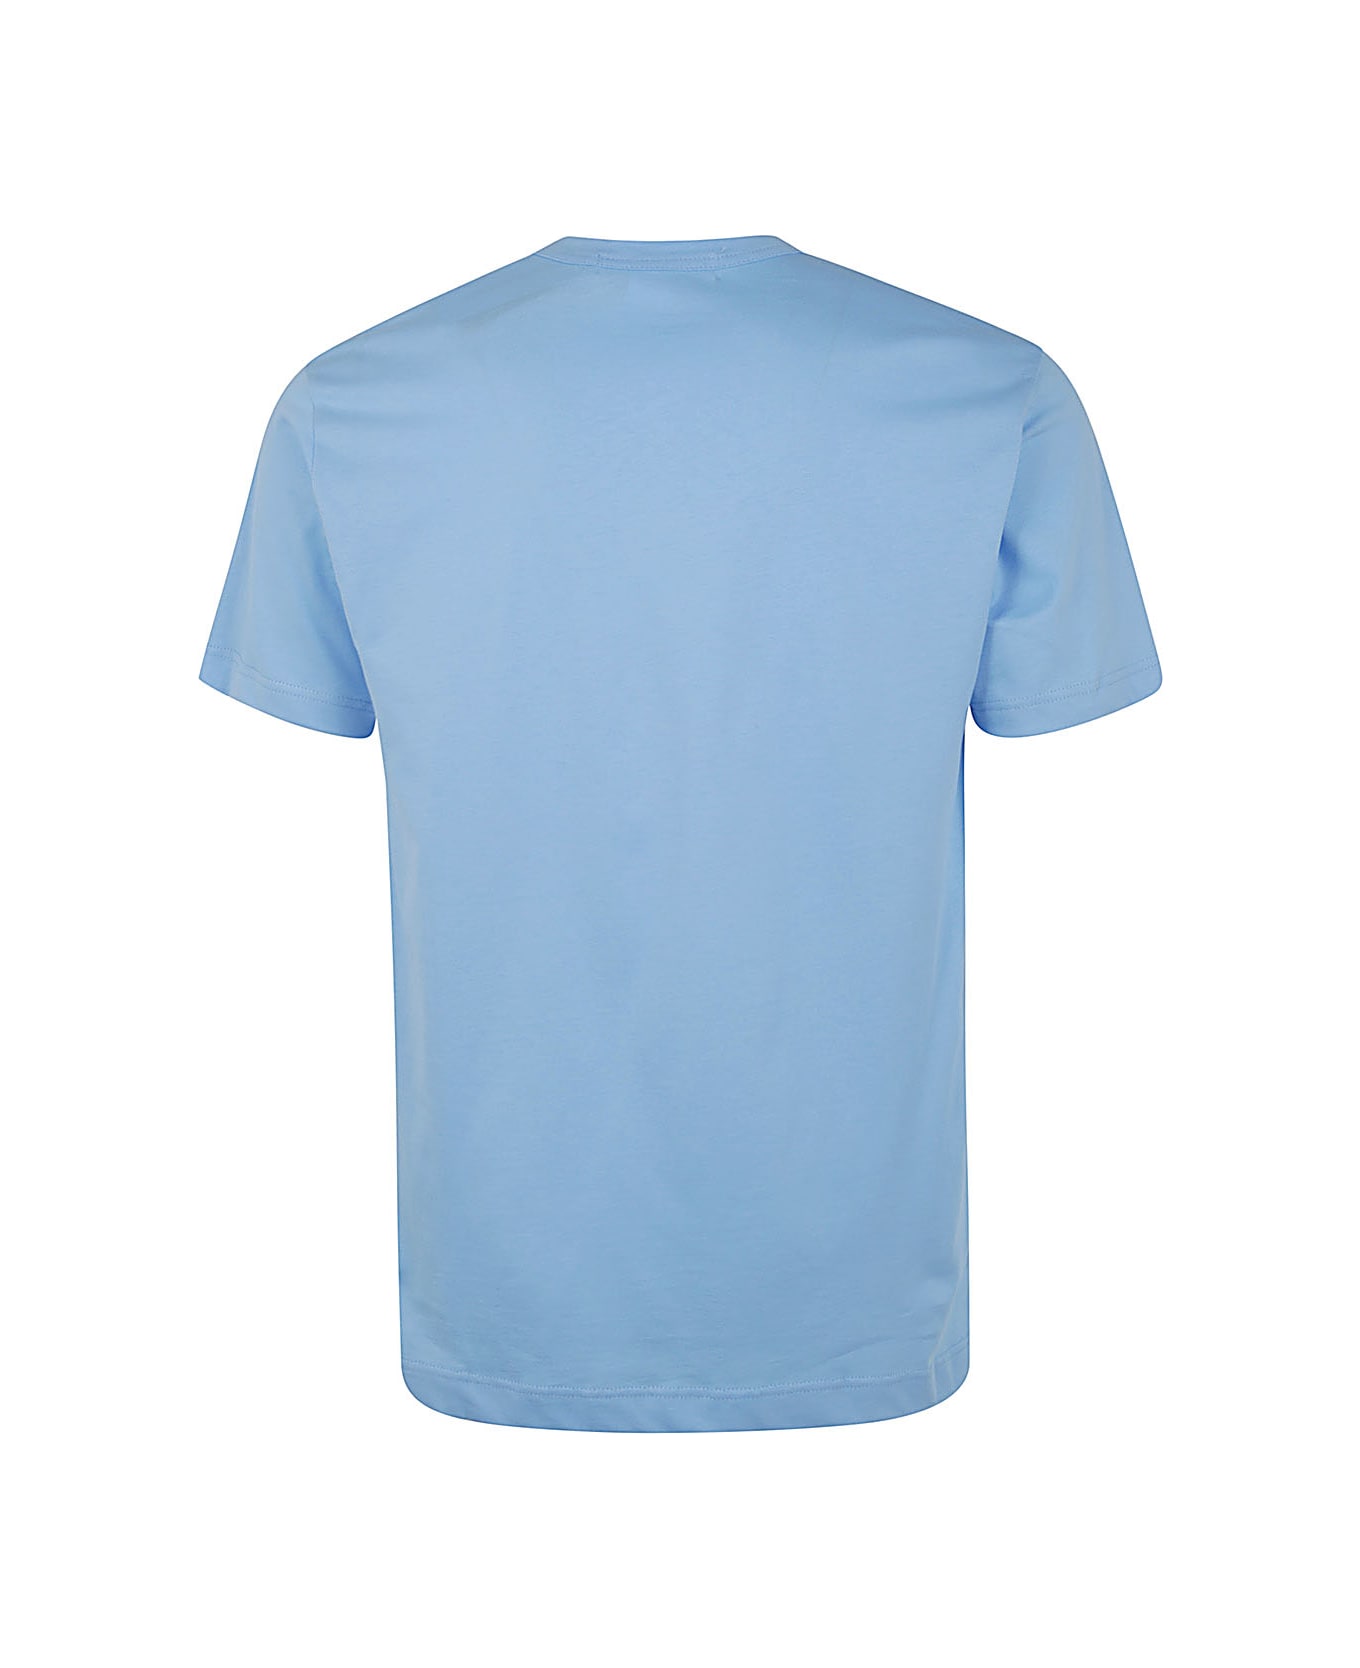 Comme des Garçons Shirt Mens T-shirt Knit - Blue シャツ